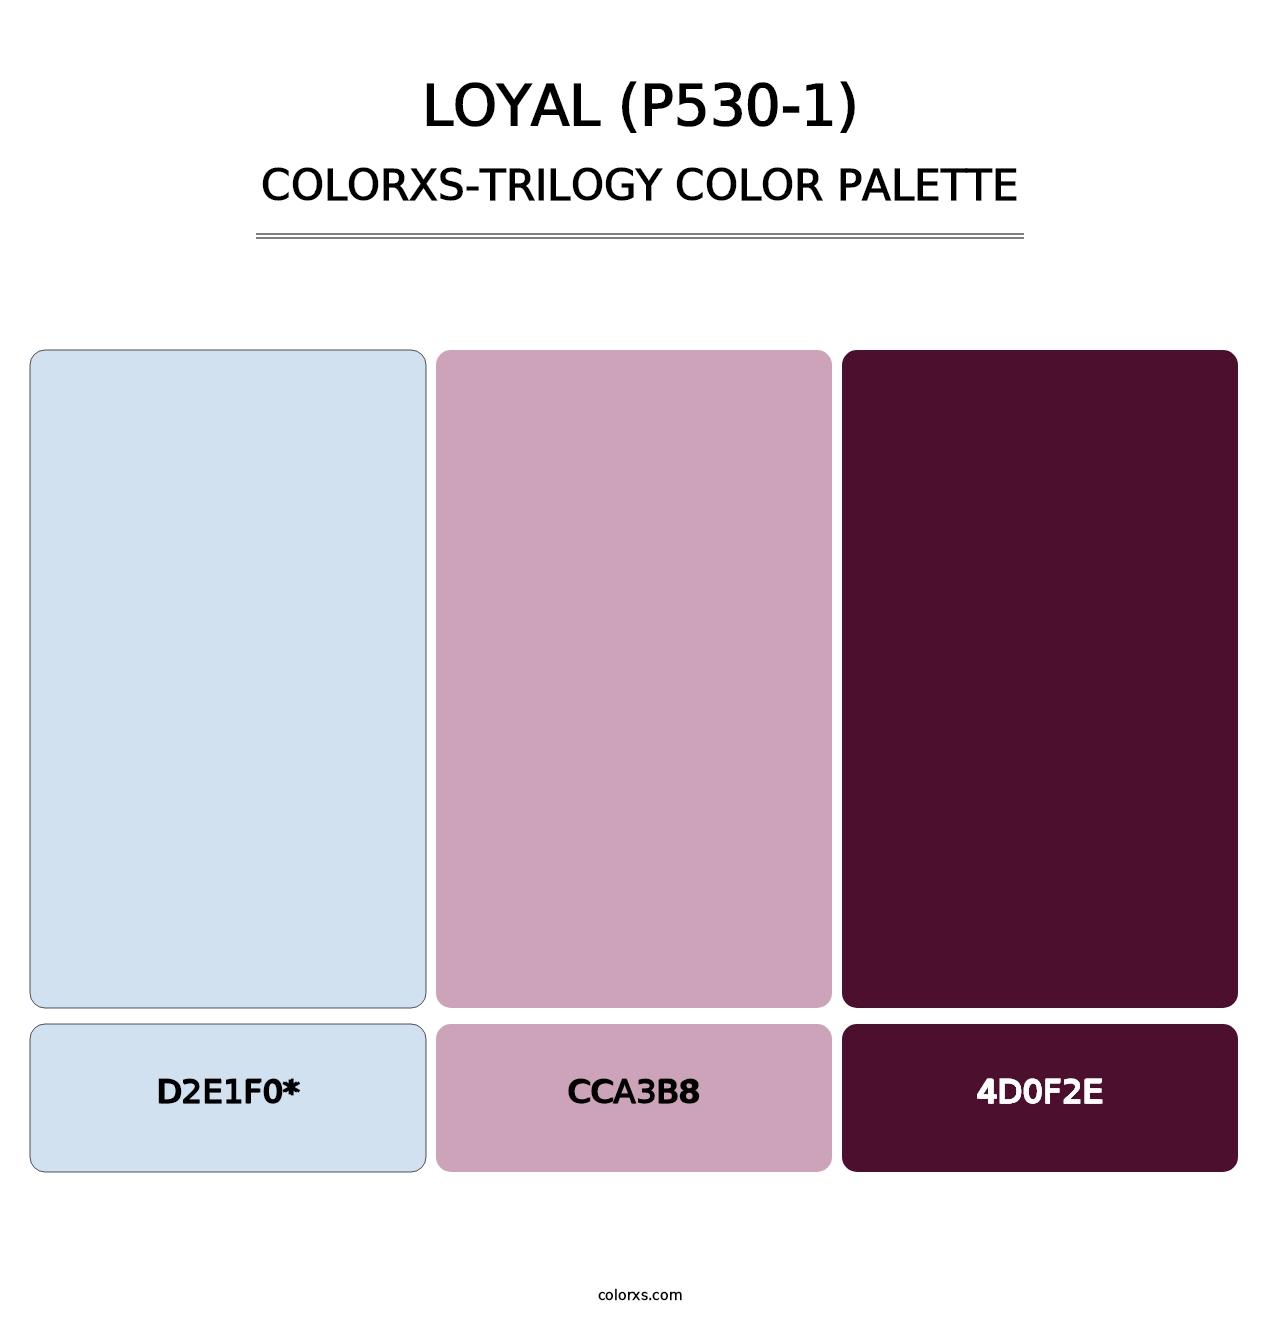 Loyal (P530-1) - Colorxs Trilogy Palette